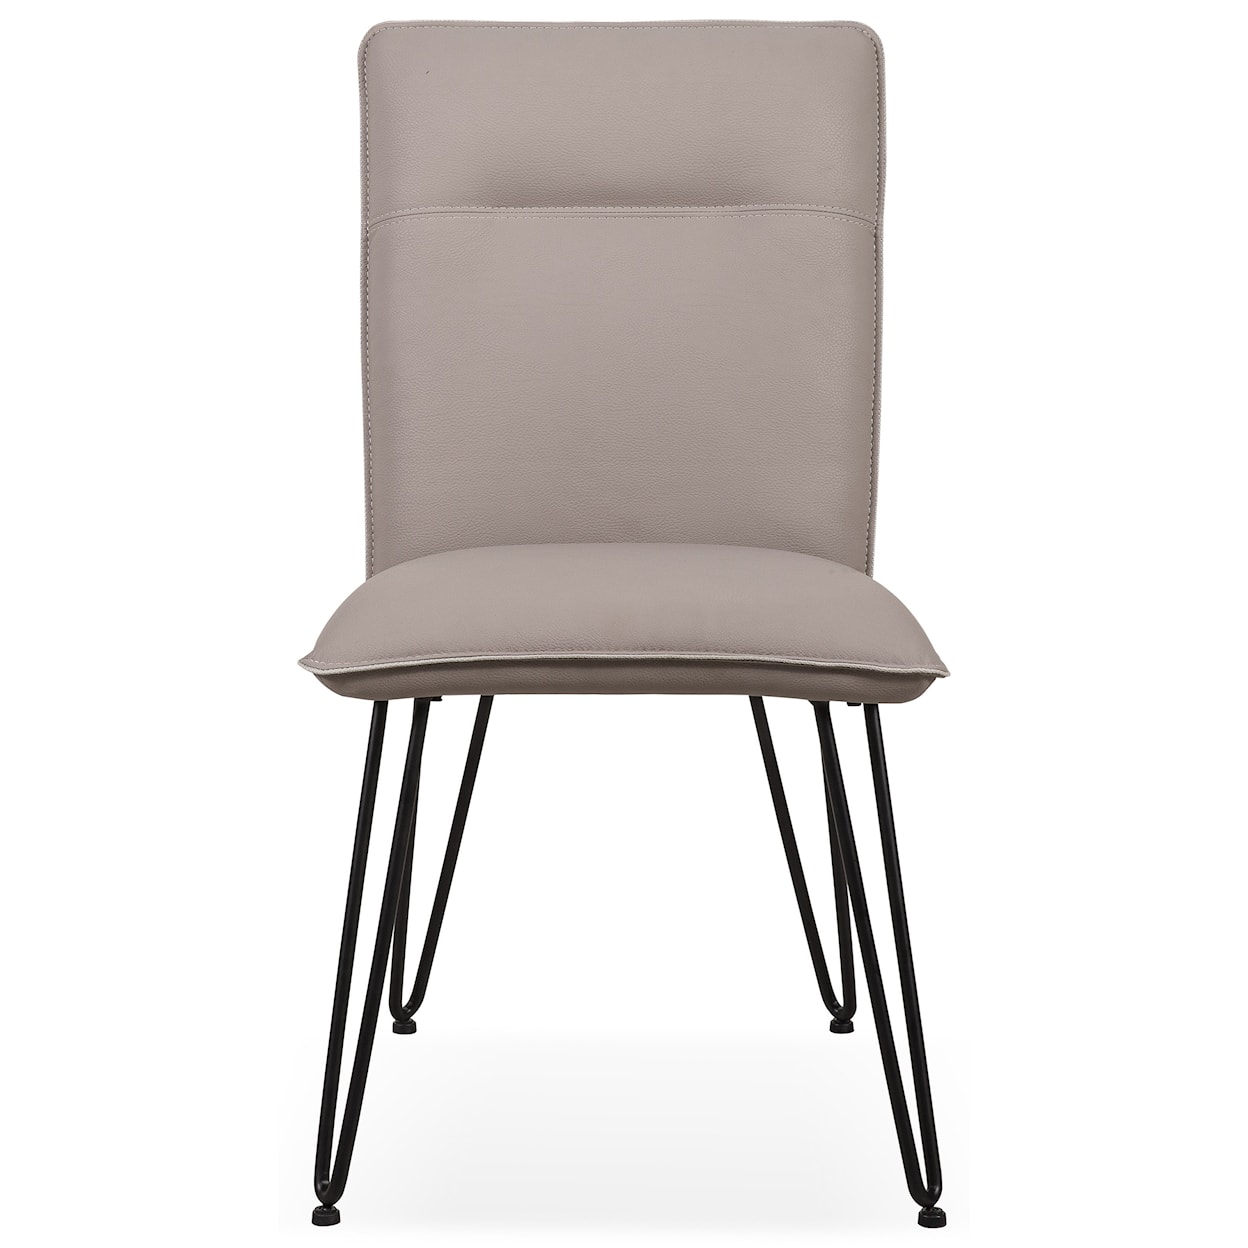 Modus International Crossroads Demi Hairpin Leg Modern Dining Chair